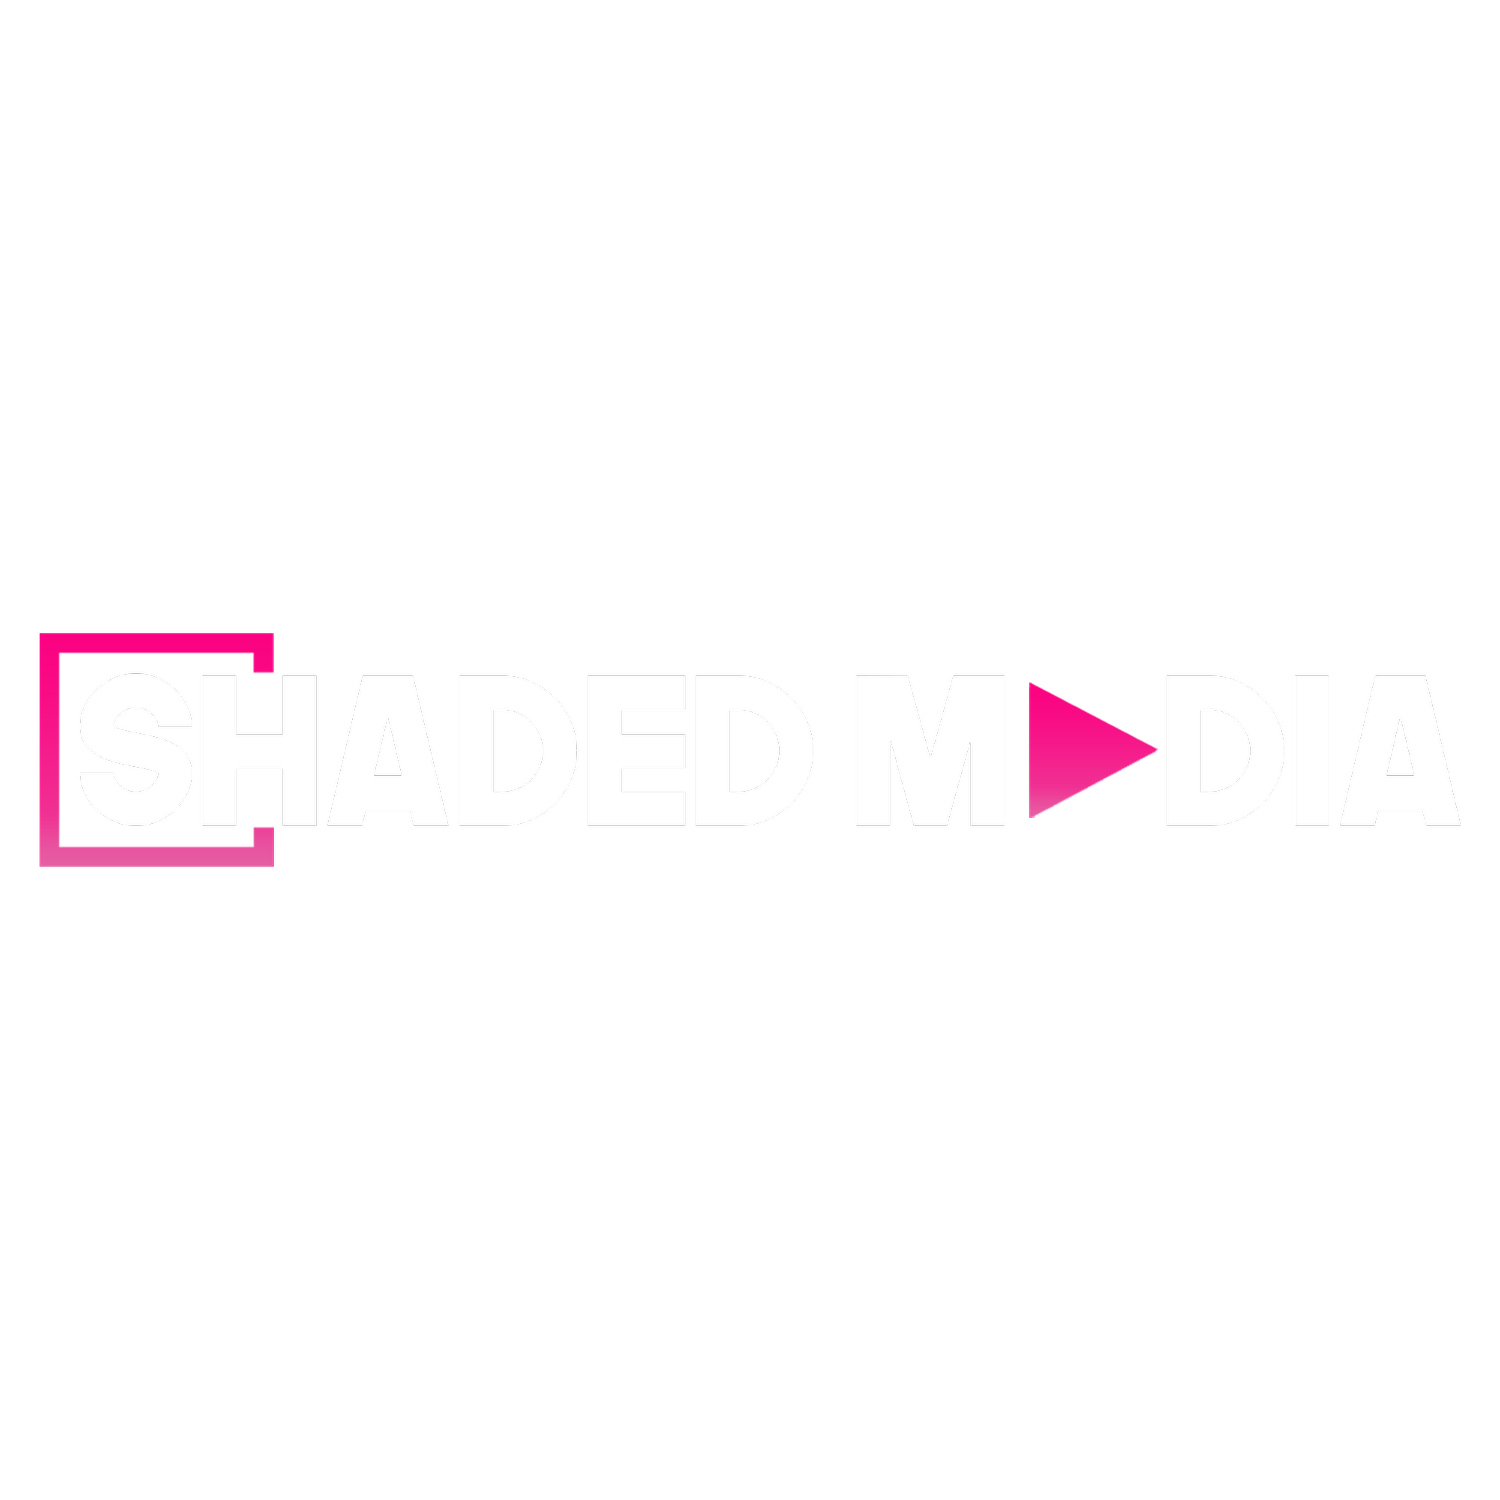 Shaded Media Group